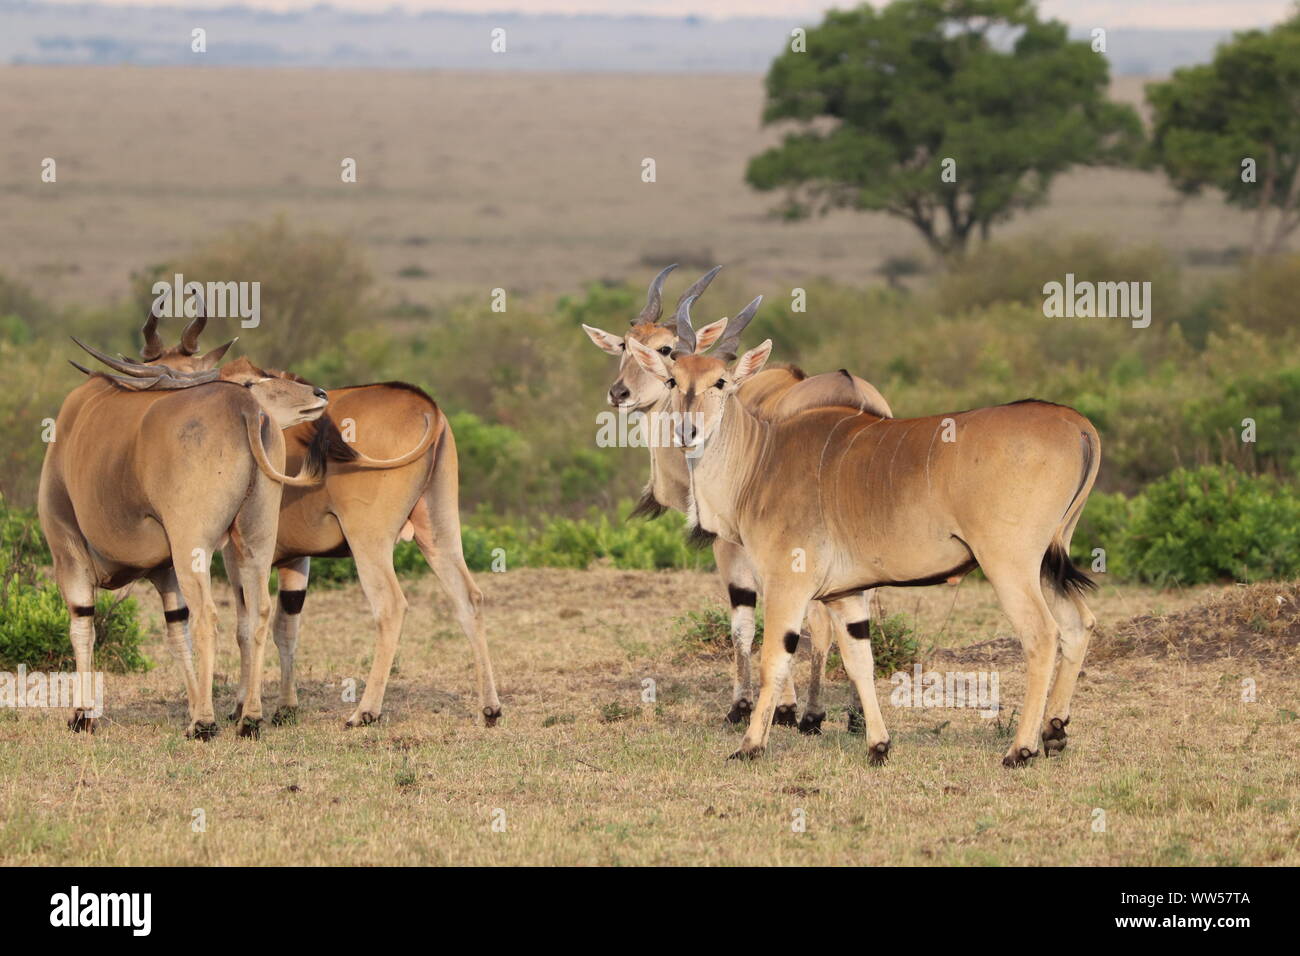 Group of elands in the savannah, Masai Mara National Park, Kenya. Stock Photo